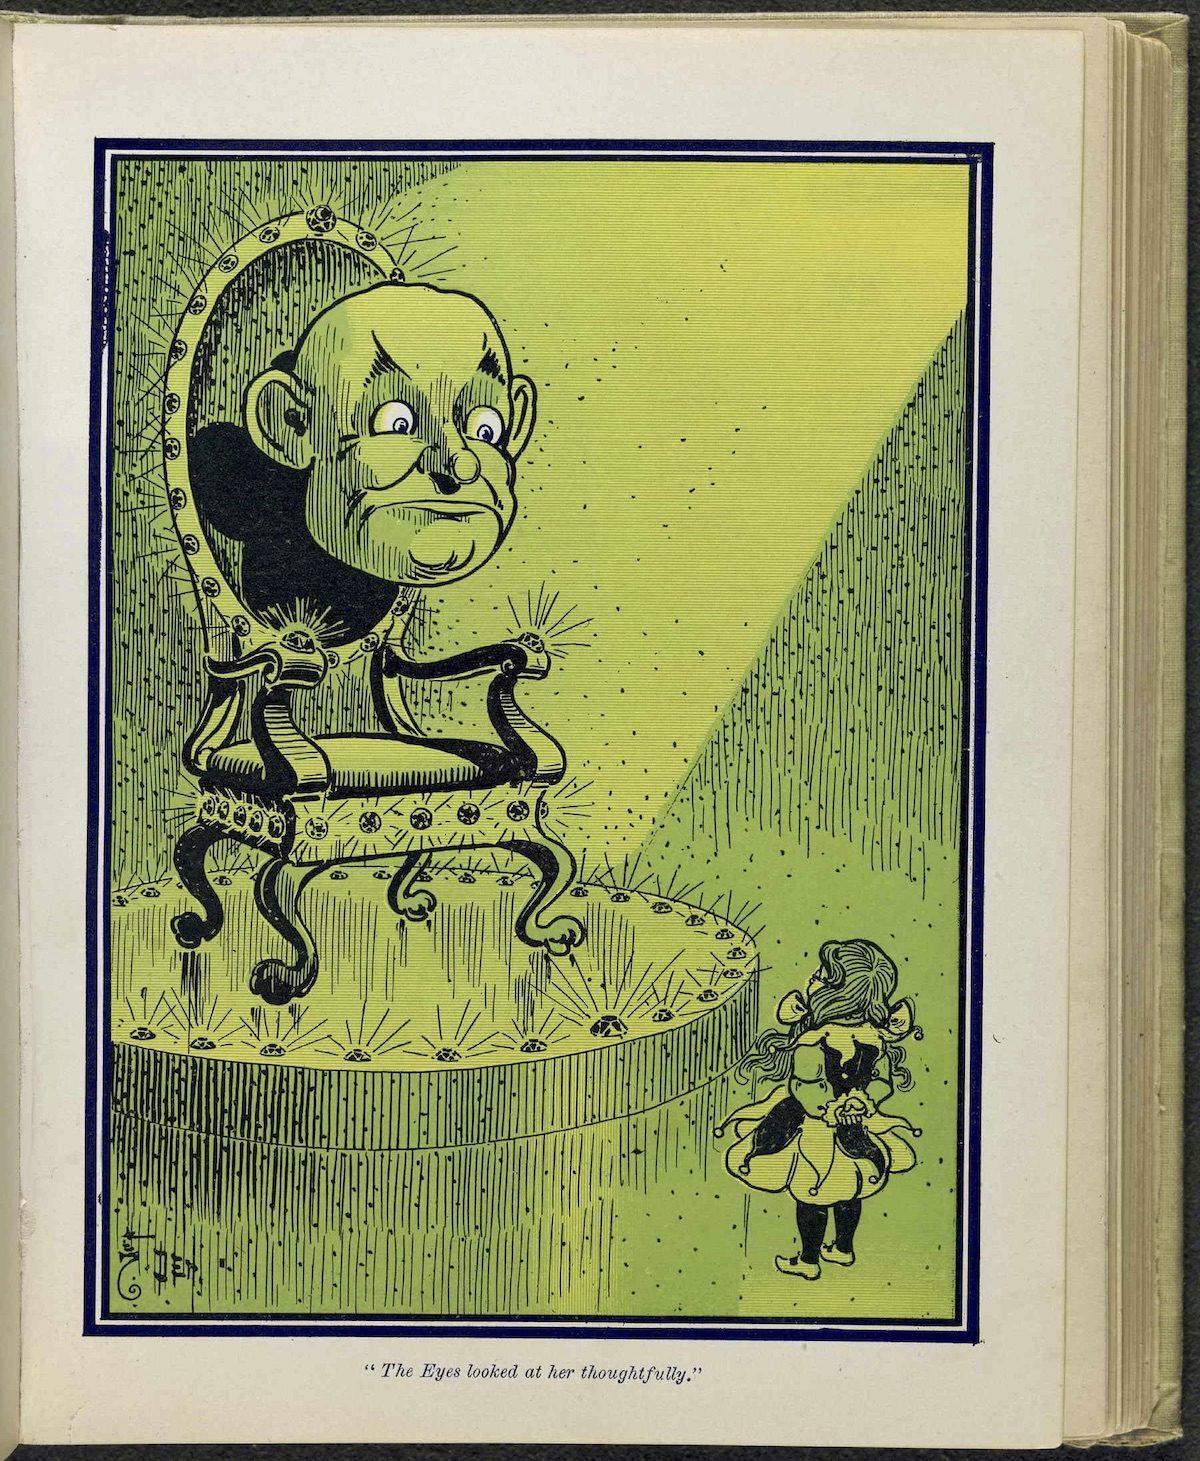 The Wonderful Wizard of Oz illustrated W. W. Denslow